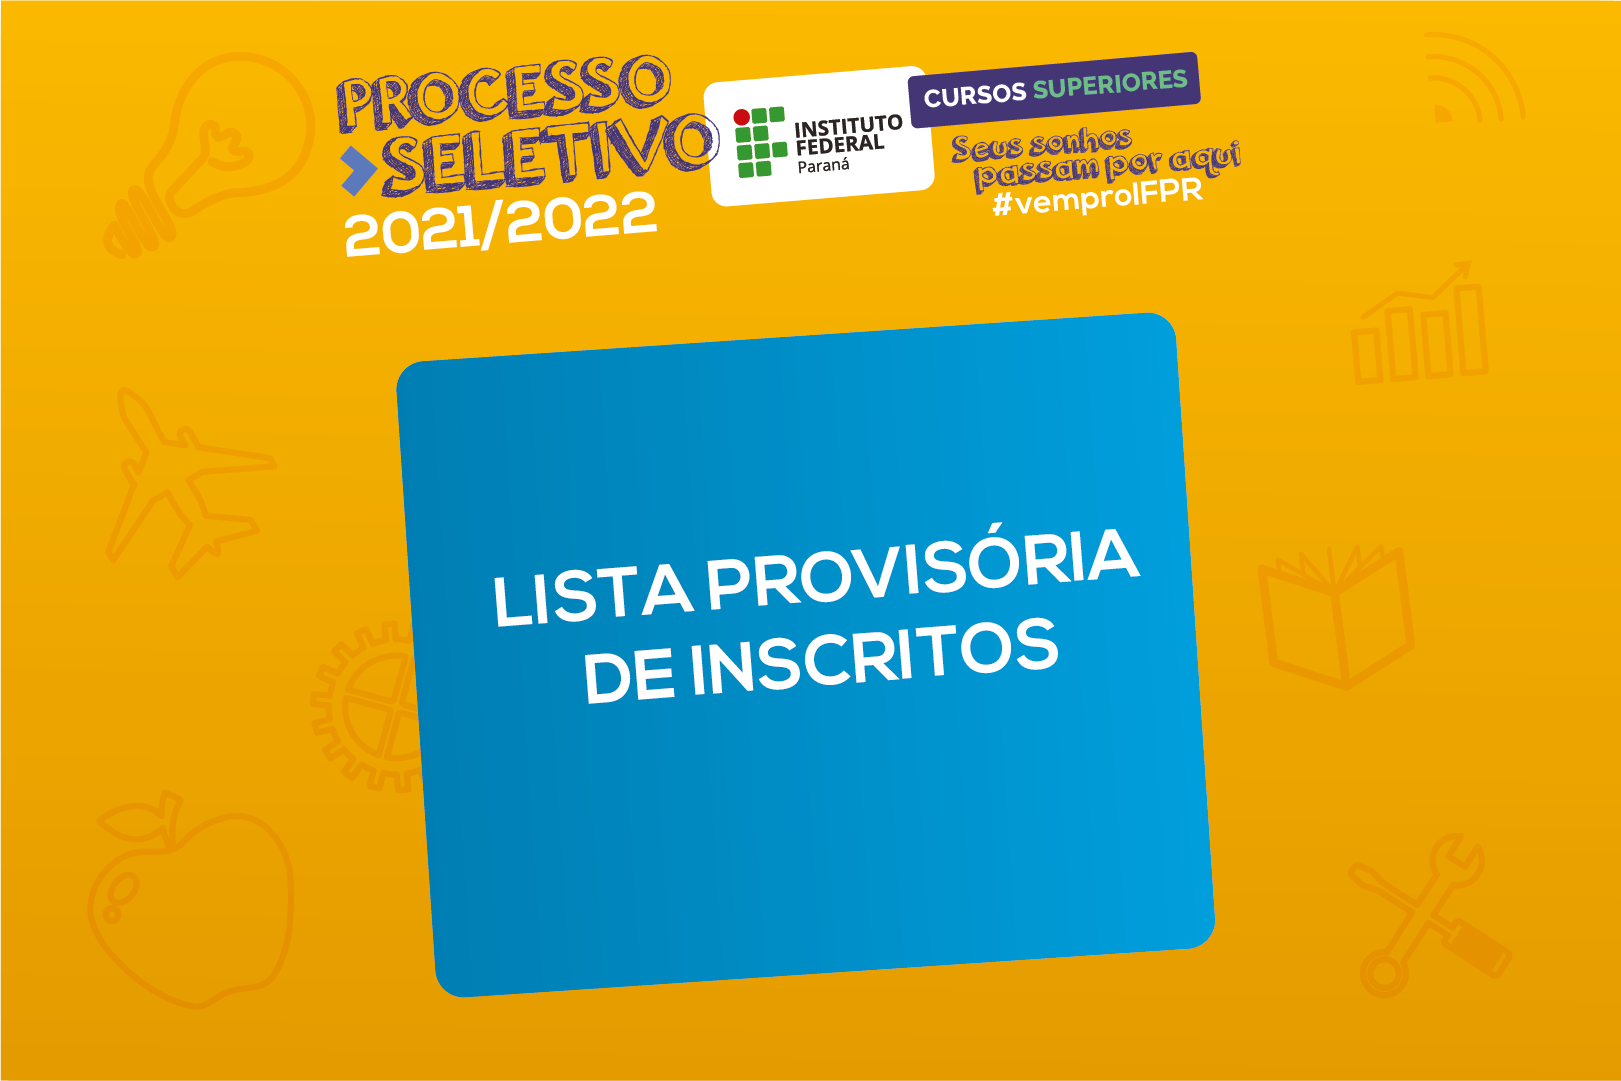 "Processo Seletivo 2021/2022. Lista provisória de inscritos"